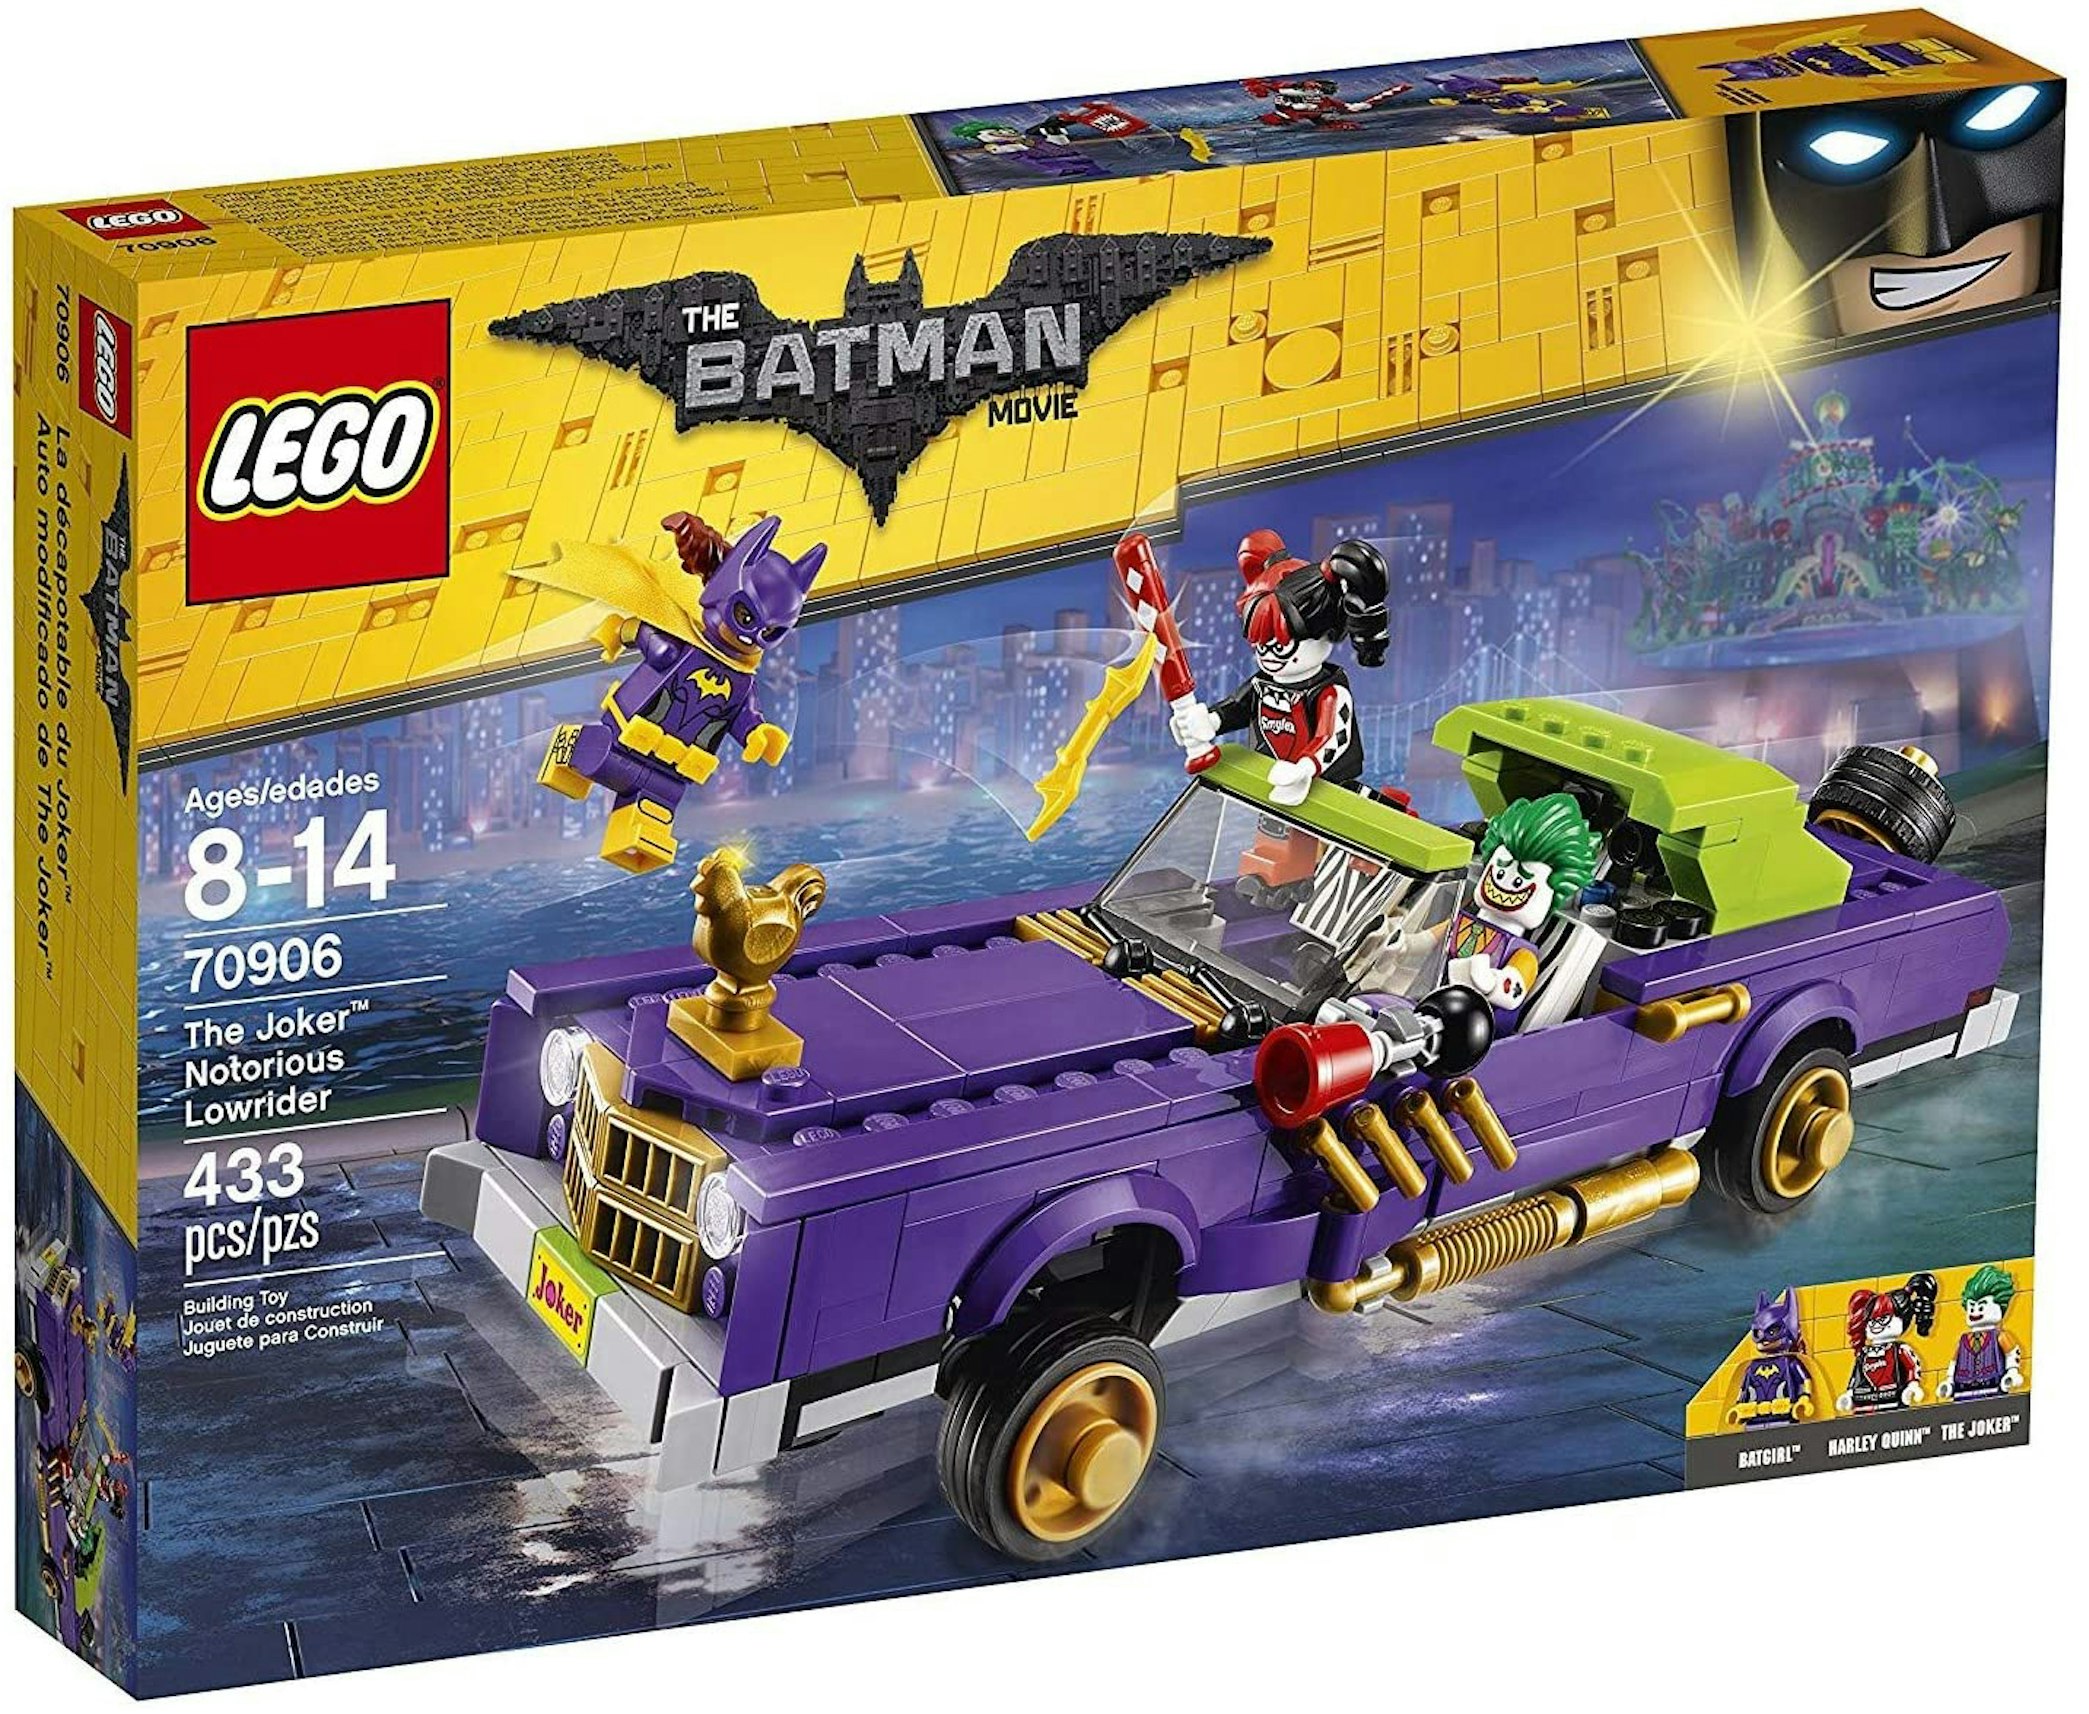 væbner menneskemængde Uforudsete omstændigheder LEGO The LEGO Batman Movie The Joker Notorious Lowrider Set 70906 - US